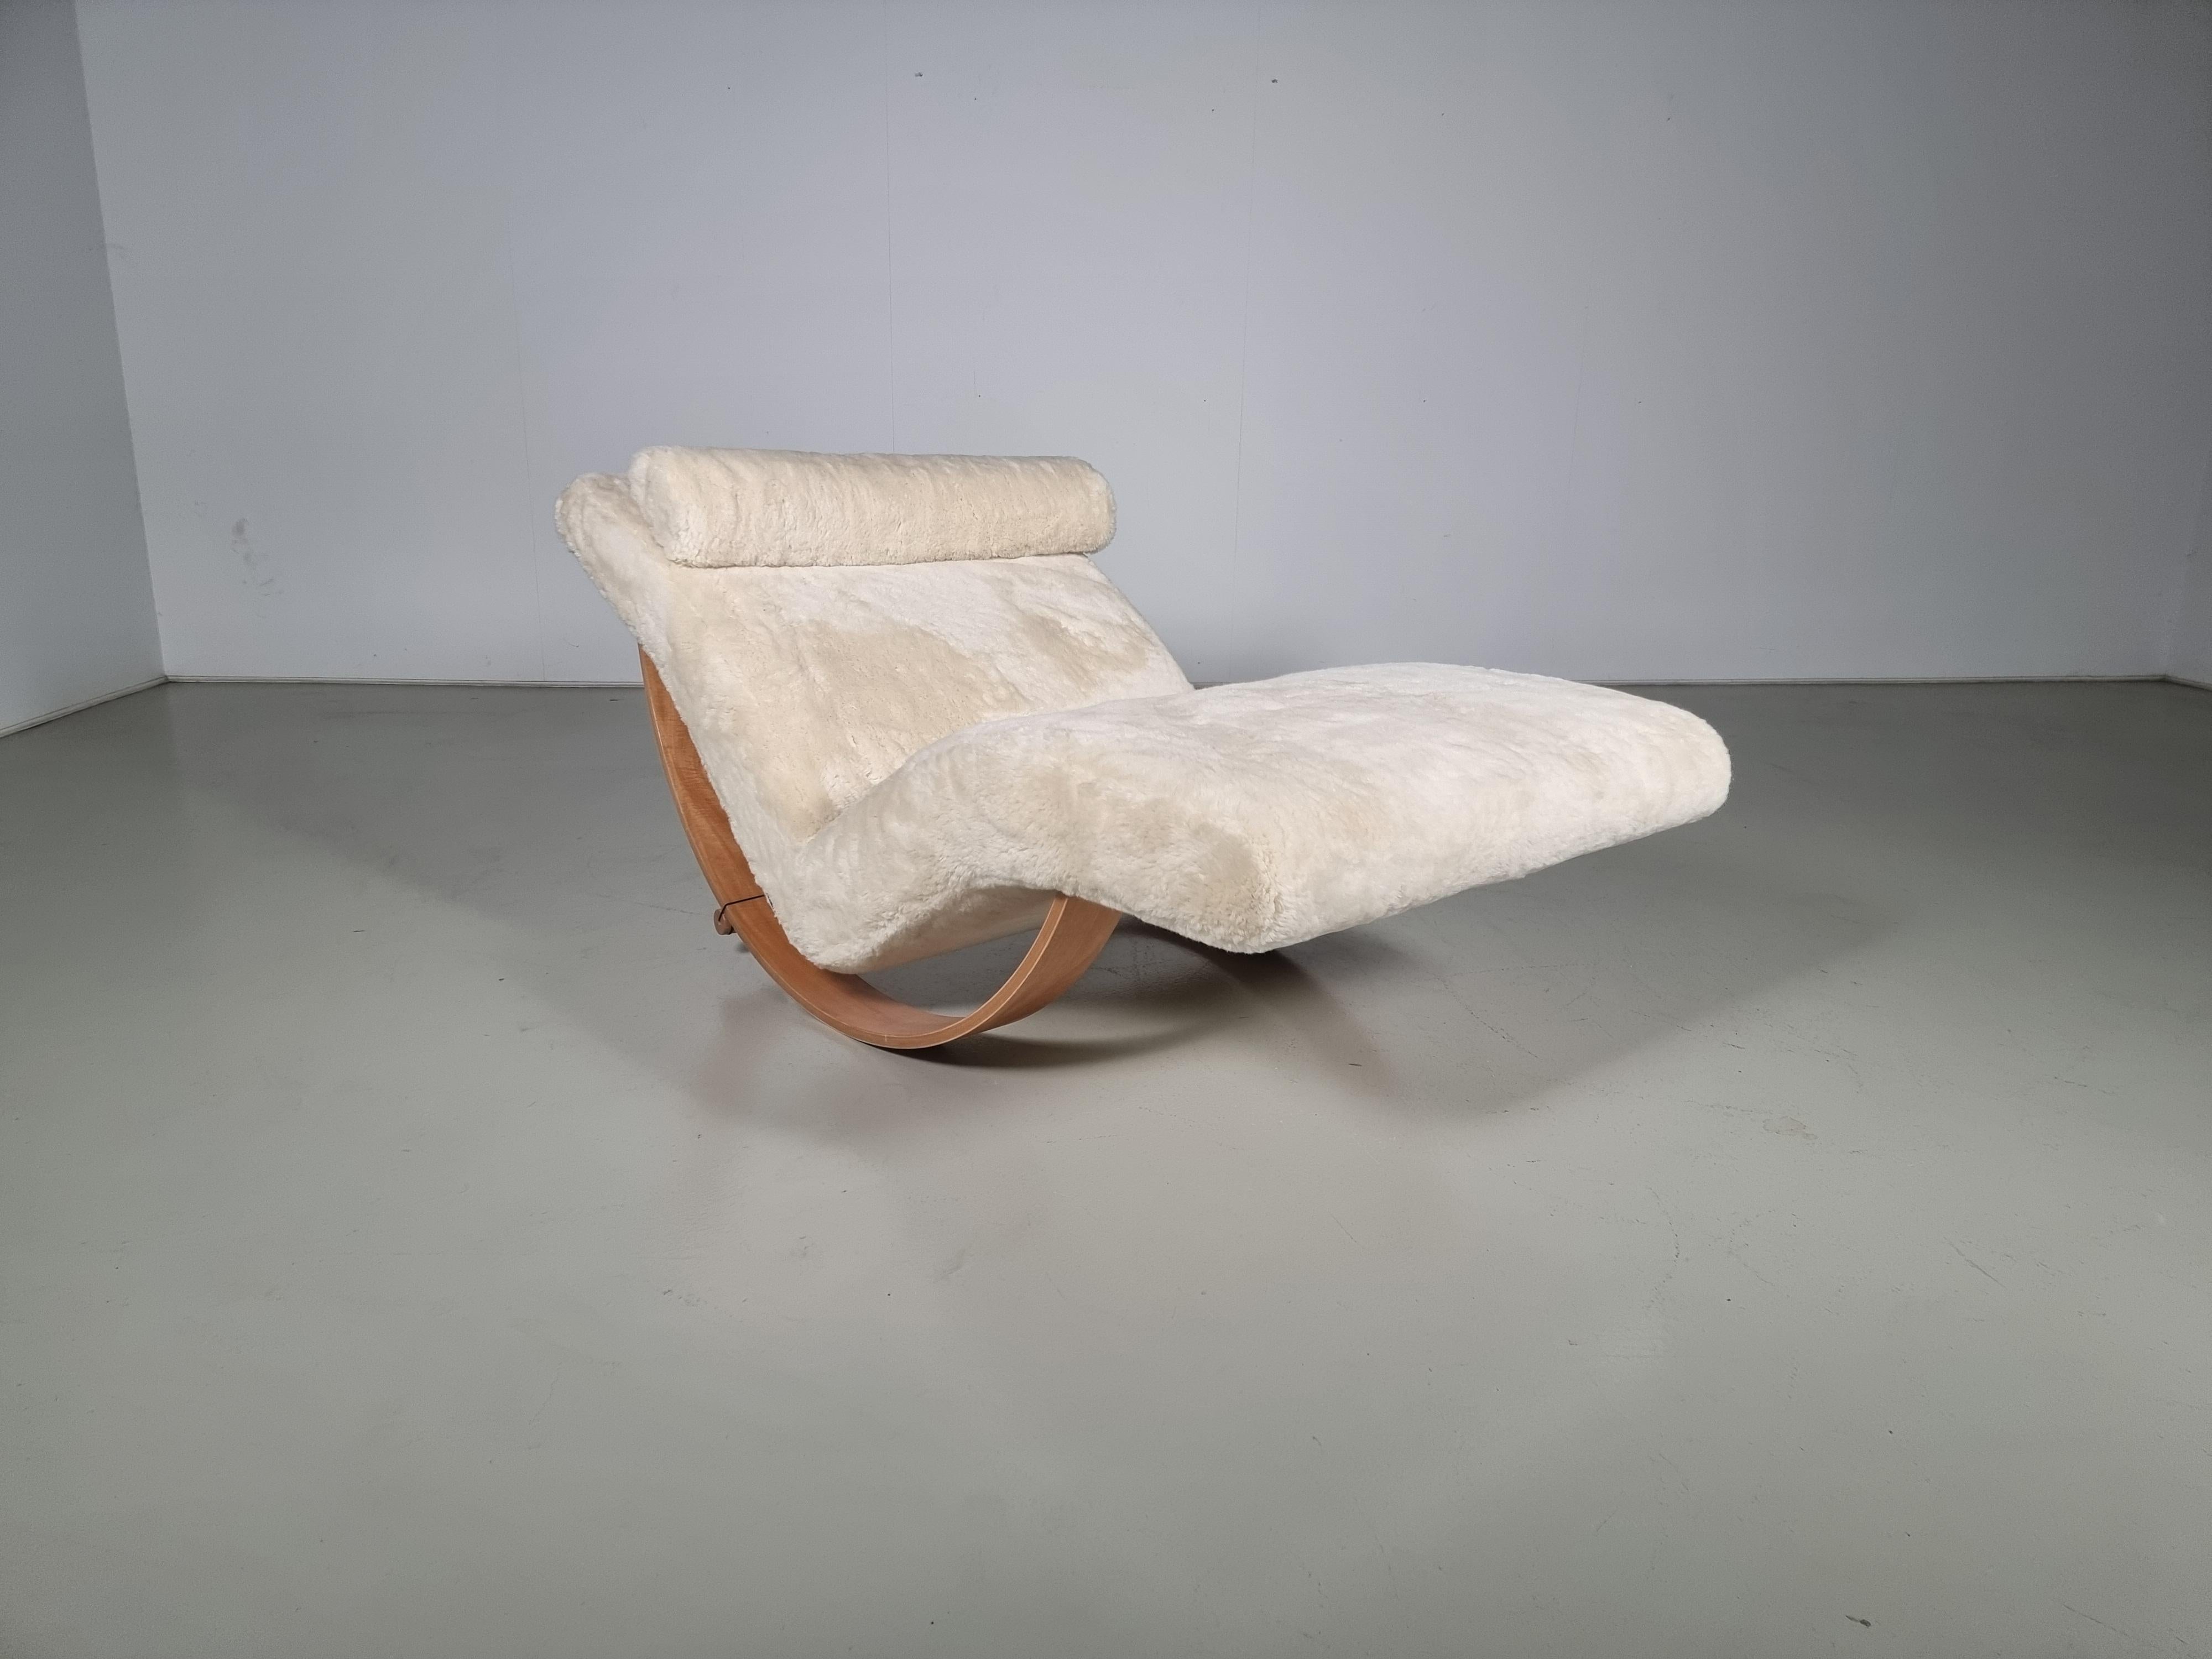 Gabbiano by Giovannetti est un fauteuil à bascule en forme d'ailes de mouette.

Le mélange de ses matériaux, associé à la sensualité et au charme de son mouvement, confère à Gabbiano la fascination d'une île relaxante.

Nature en contreplaqué